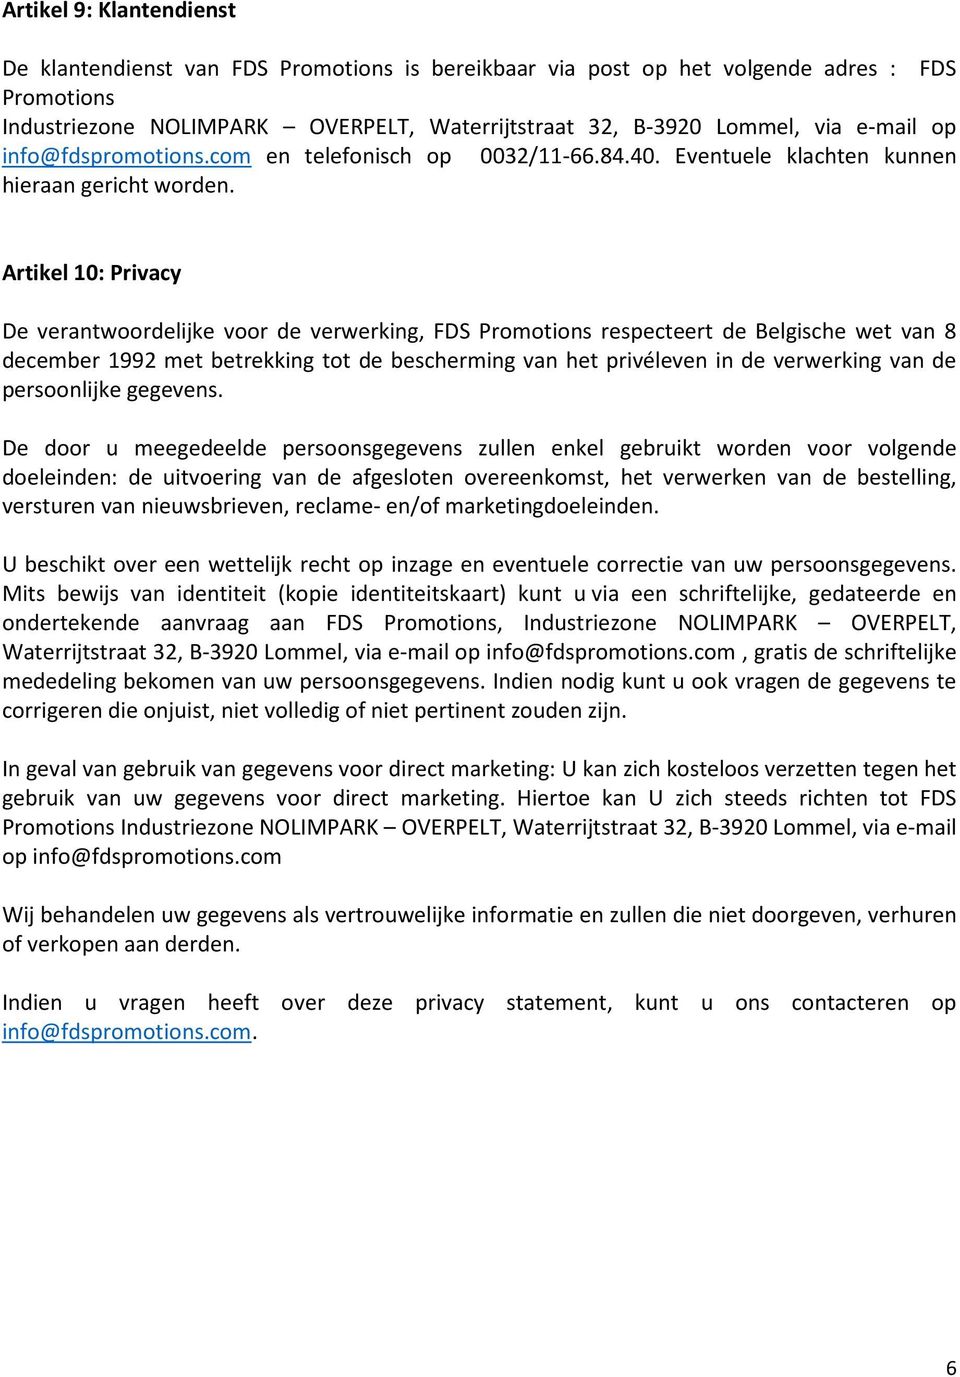 Artikel 10: Privacy De verantwoordelijke voor de verwerking, FDS Promotions respecteert de Belgische wet van 8 december 1992 met betrekking tot de bescherming van het privéleven in de verwerking van